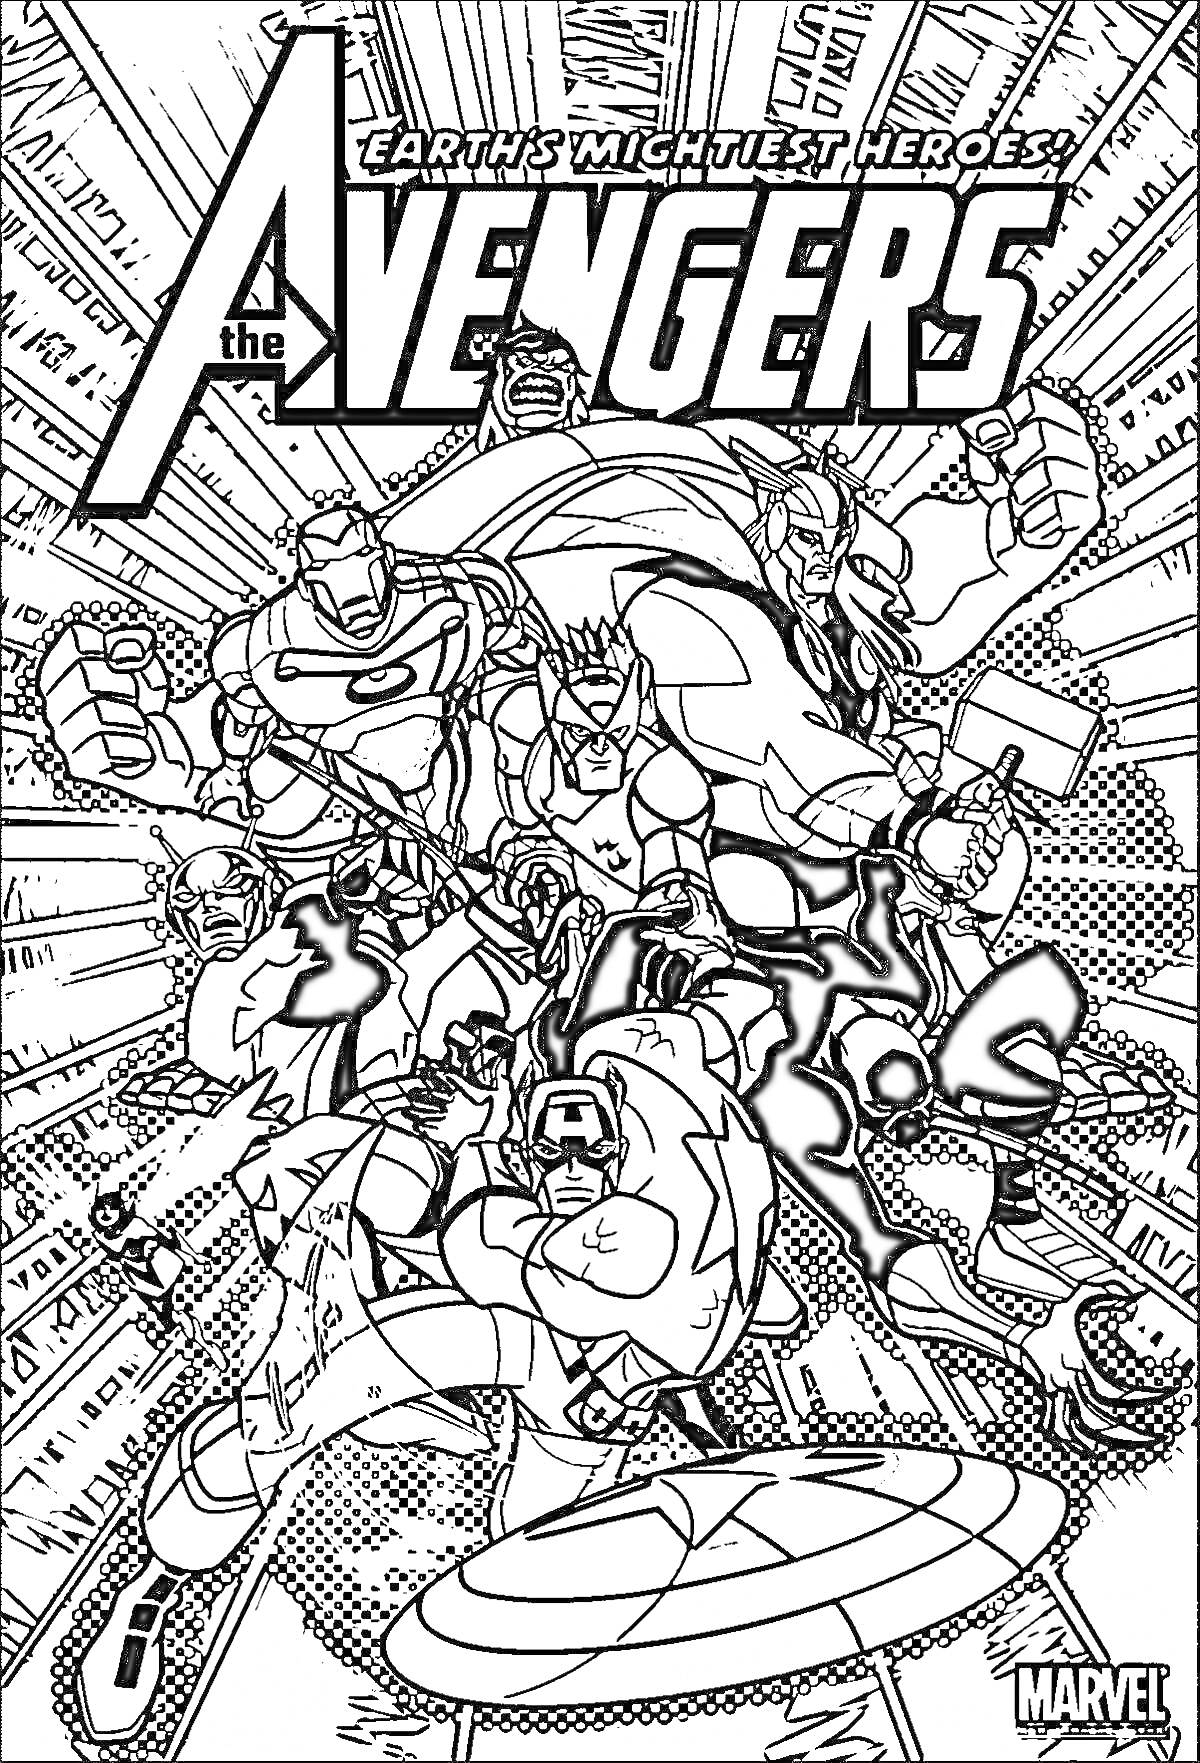 Раскраска The Avengers: Earth's Mightiest Heroes - команда супергероев (Железный Человек, Тор, Капитан Америка, Халк, Соколиный глаз, Чёрная вдова)